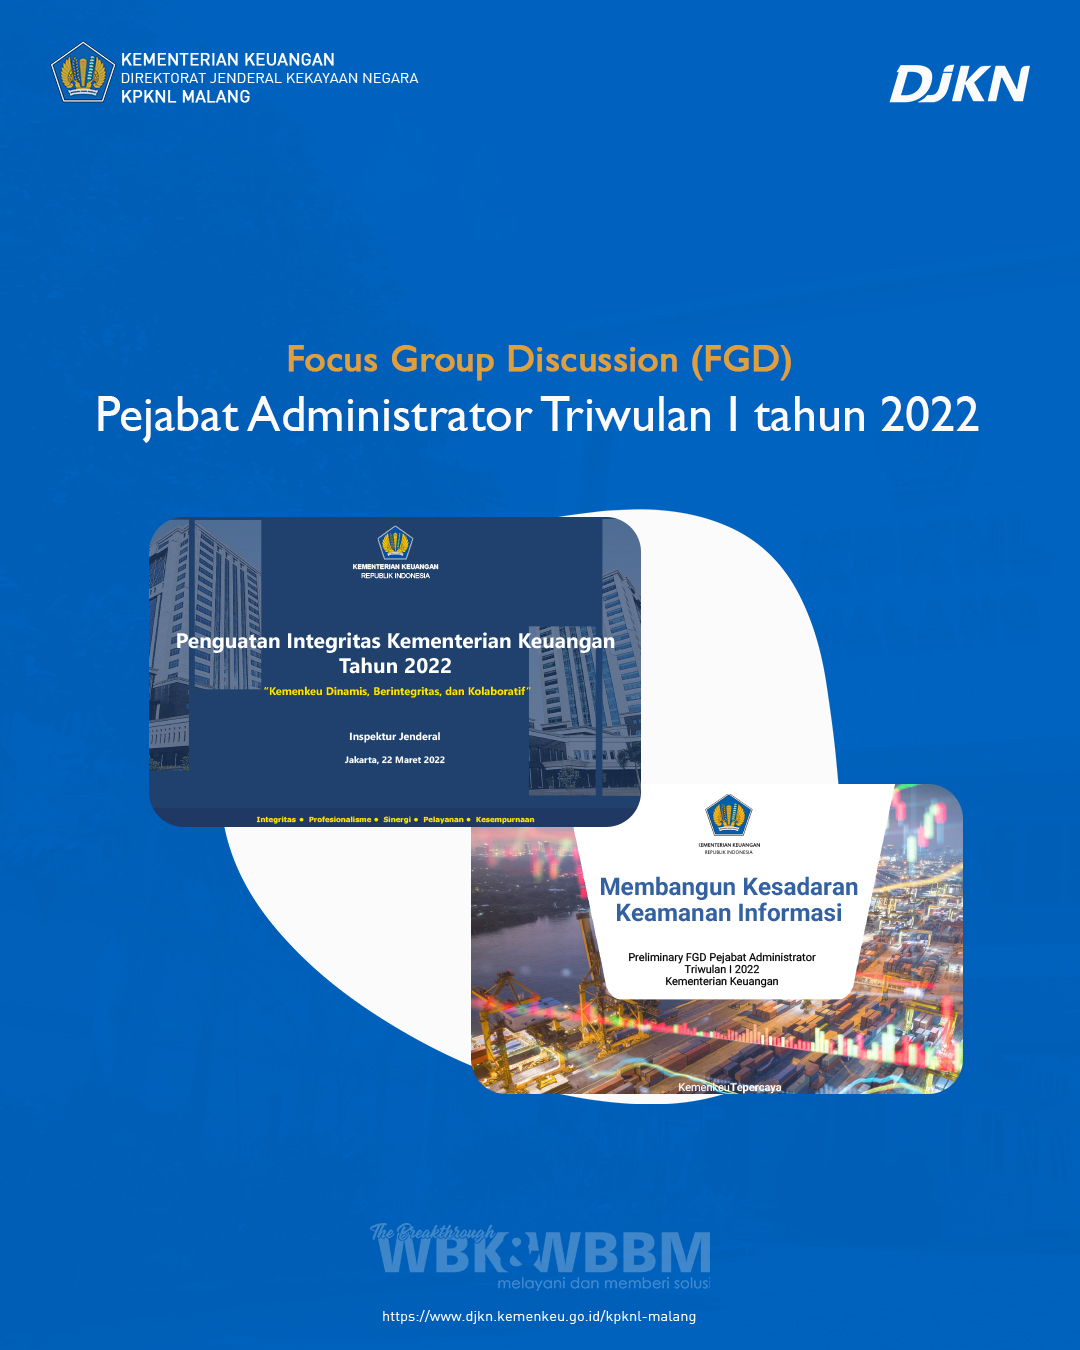 Focus Group Discussion (FGD) Pejabat Administrator Triwulan I Tahun 2022 "Kemenkeu Dinamis, Berintegritas, dan Kolaboratif"